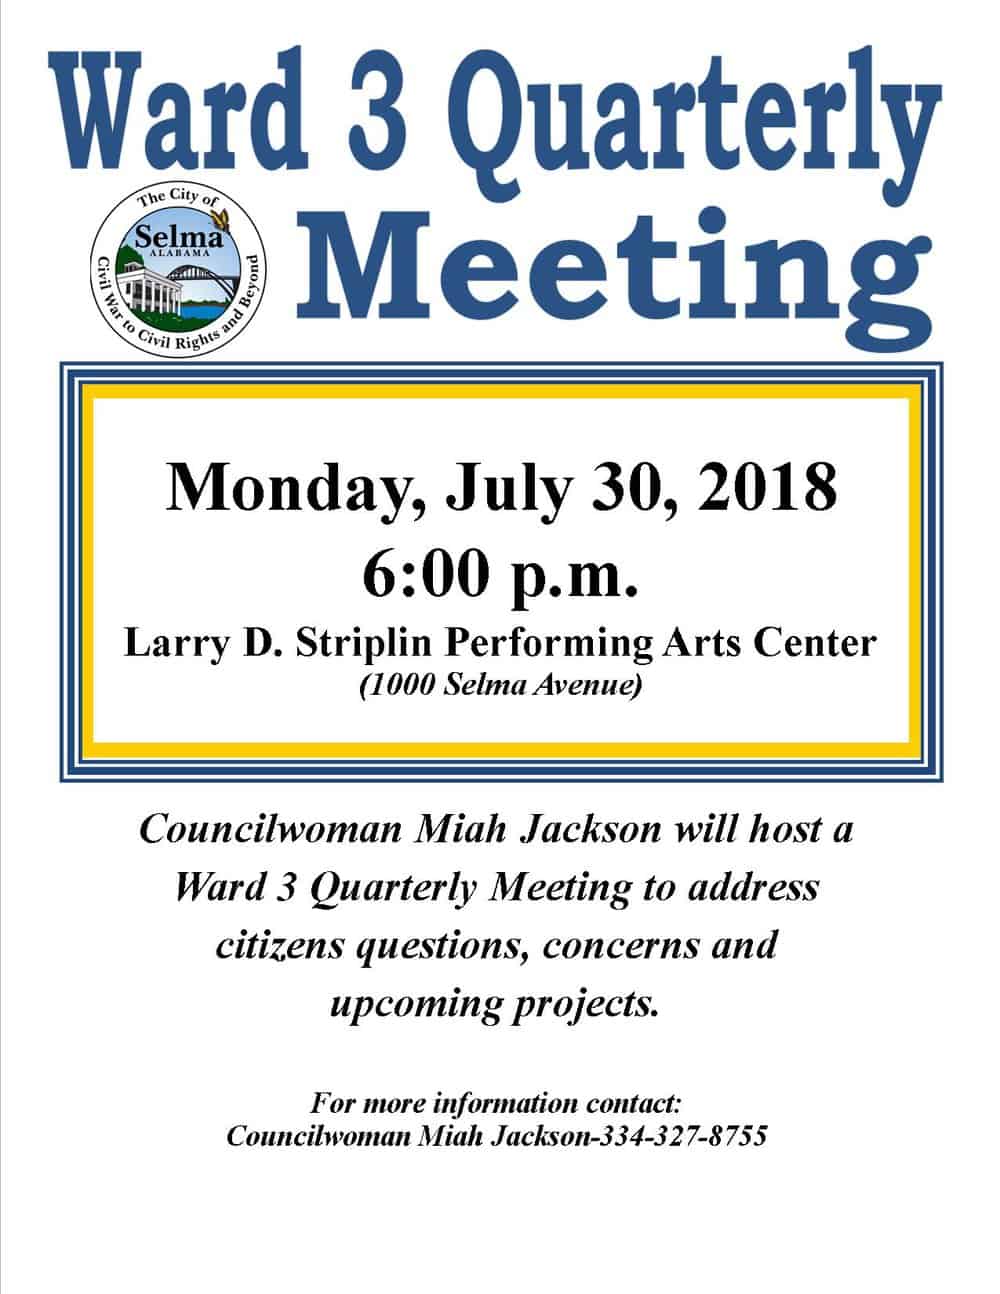 Jackson-Ward 3 Meeting Flyer-7.30.2018.jpg